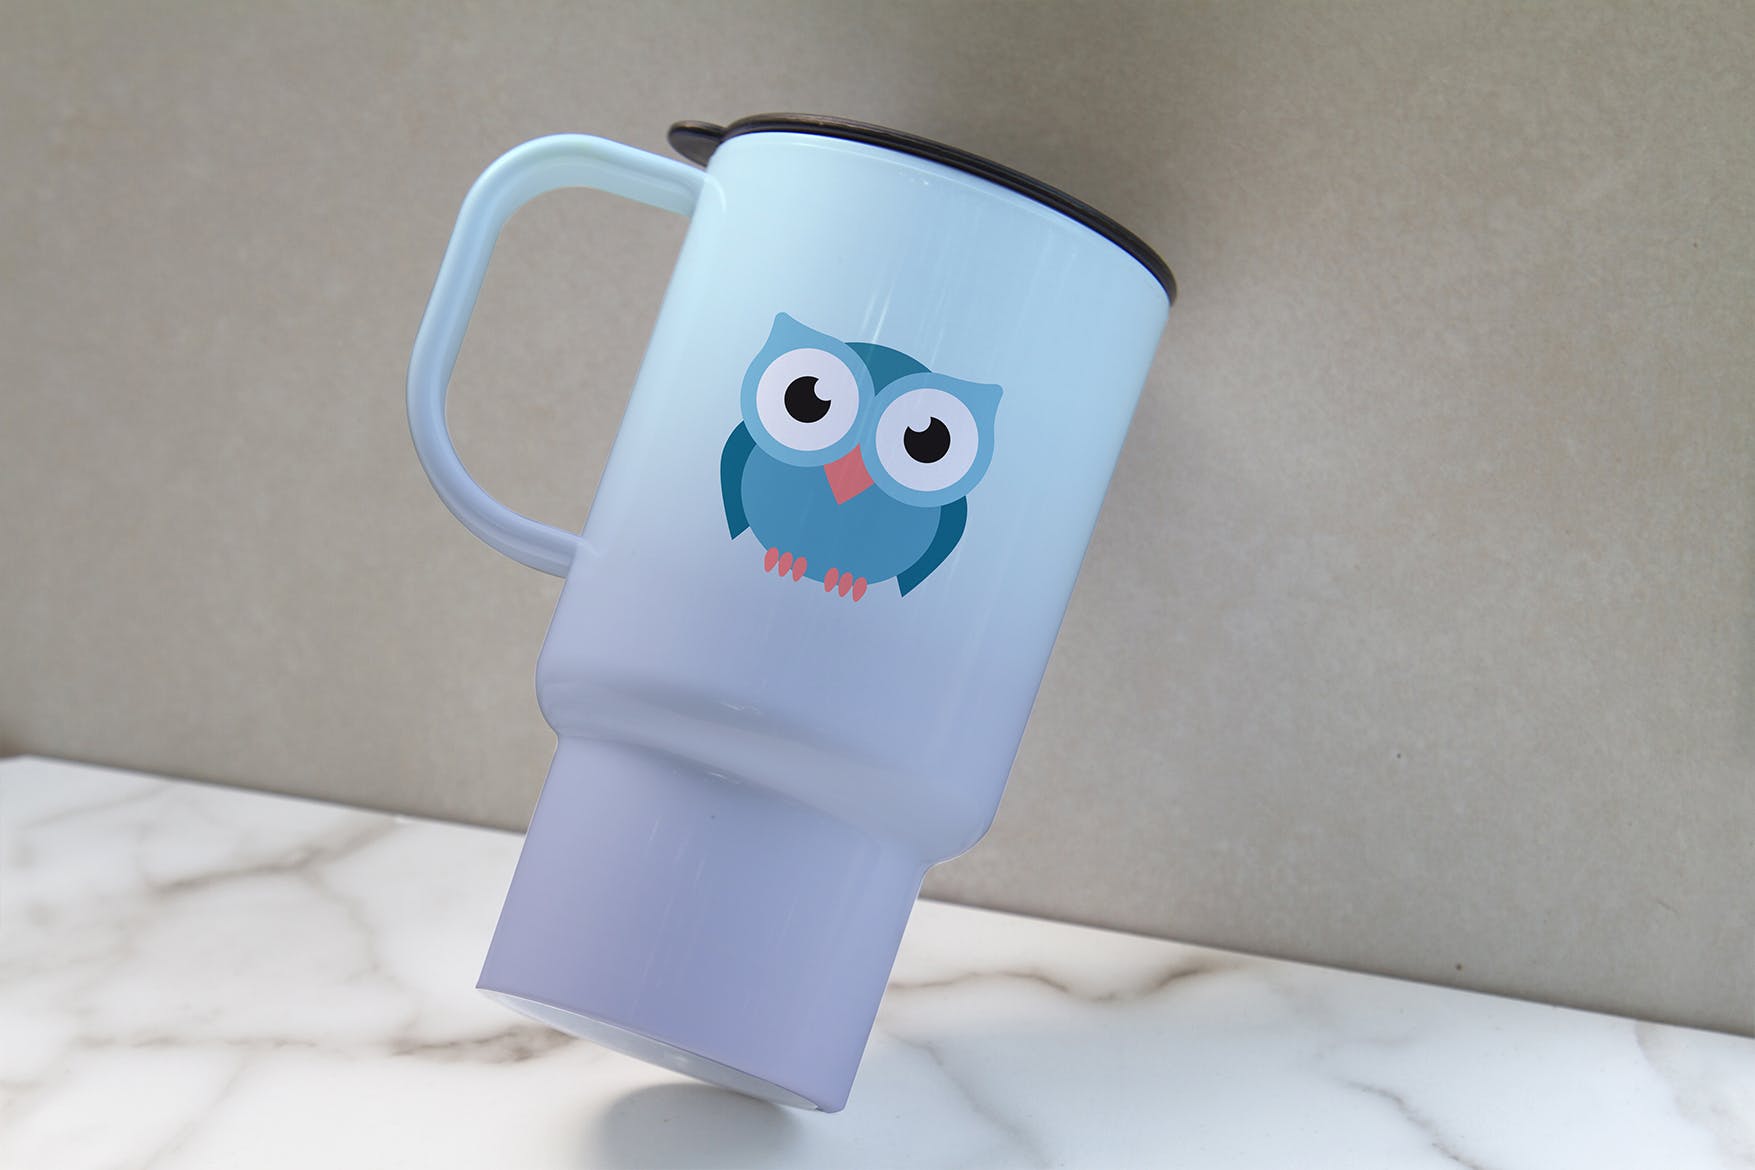 便携式杯子图案设计预览16设计网精选 Portable Cup Mockup插图(2)